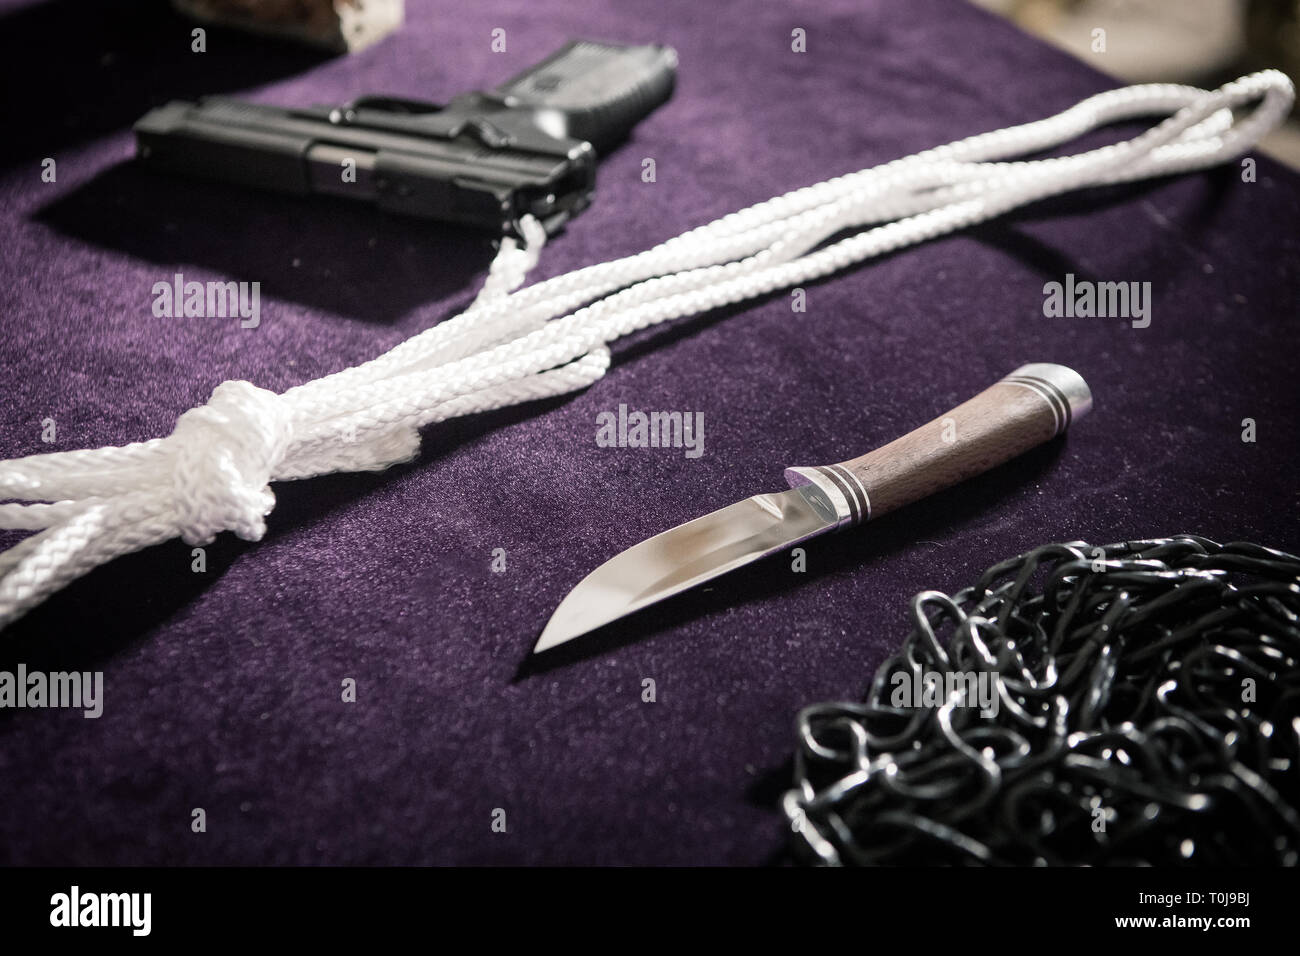 Pistole, Messer, Seil, Kette, Gun am Tatort auf dem Tisch, Kriminalität Berichte, Foto bei hohen ISO-Werten Stockfoto